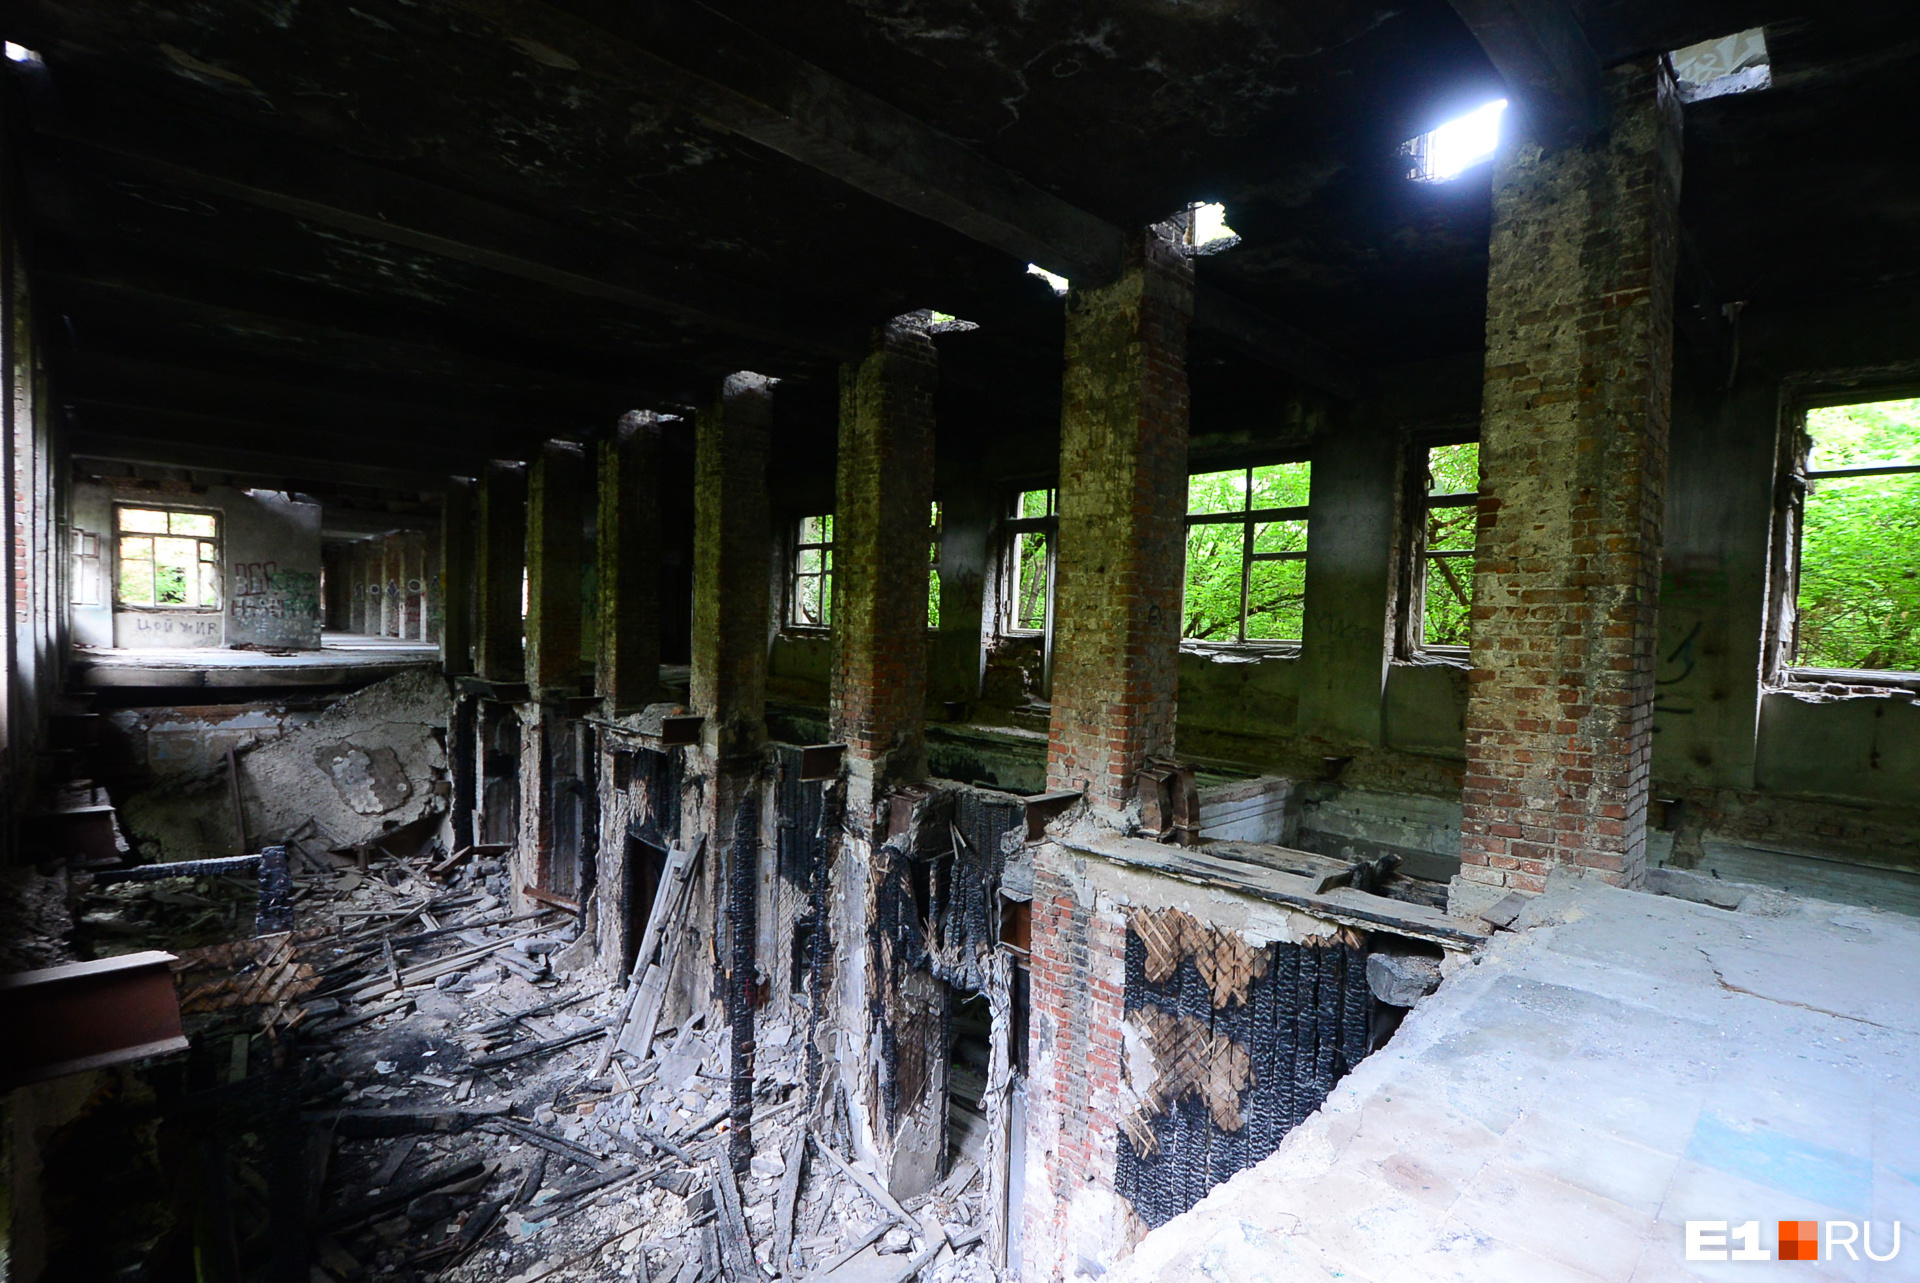 Последствия пожара и многолетней заброшенности здания 